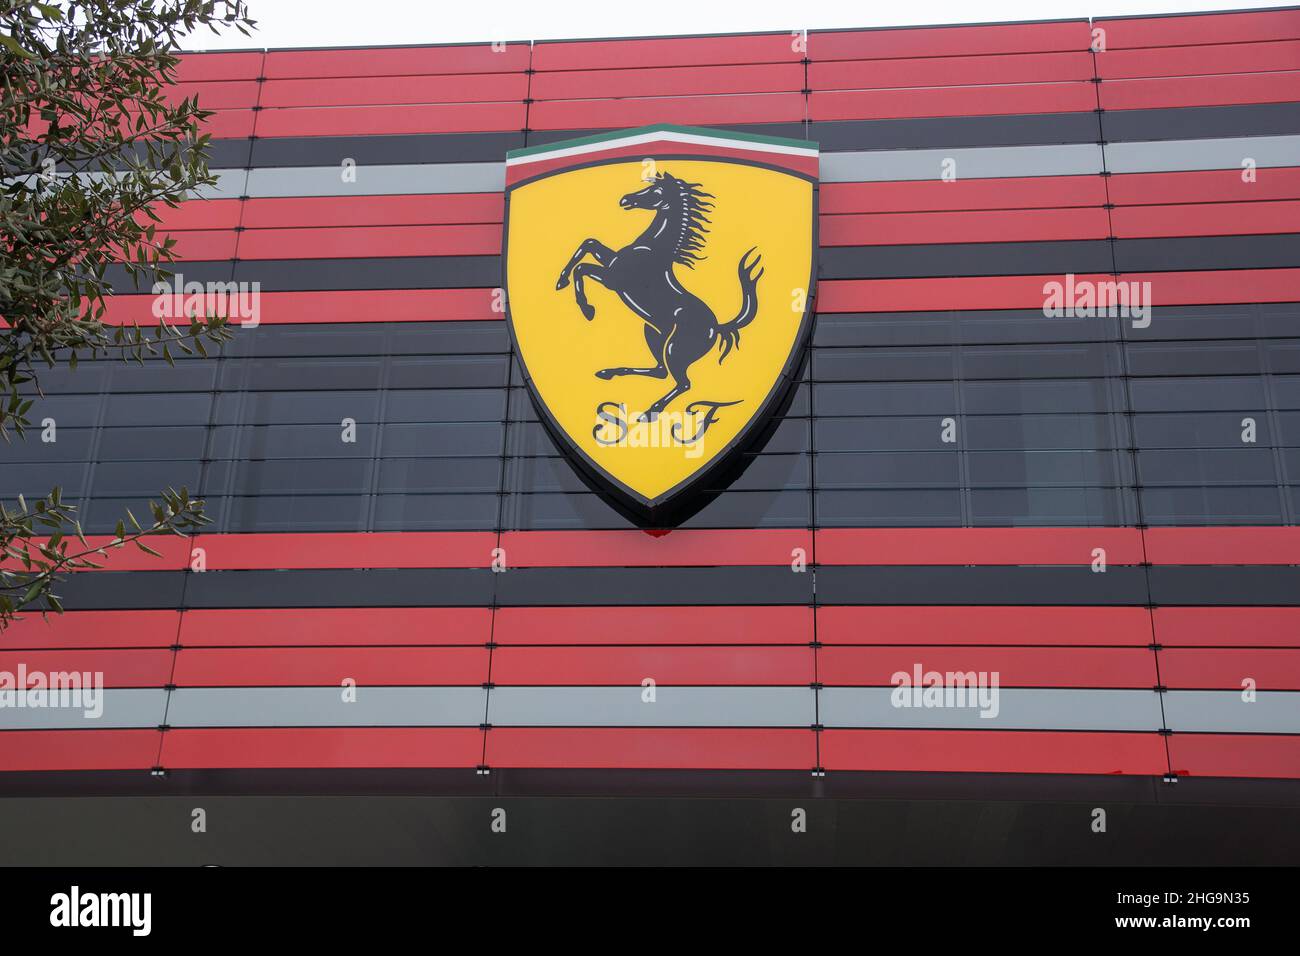 Maranello, Italien - 24. April 2016: Fassade des SPORTMANAGEMENTZENTRUMS FERRARI mit Schild und Logo der Scuderia F1 Stockfoto